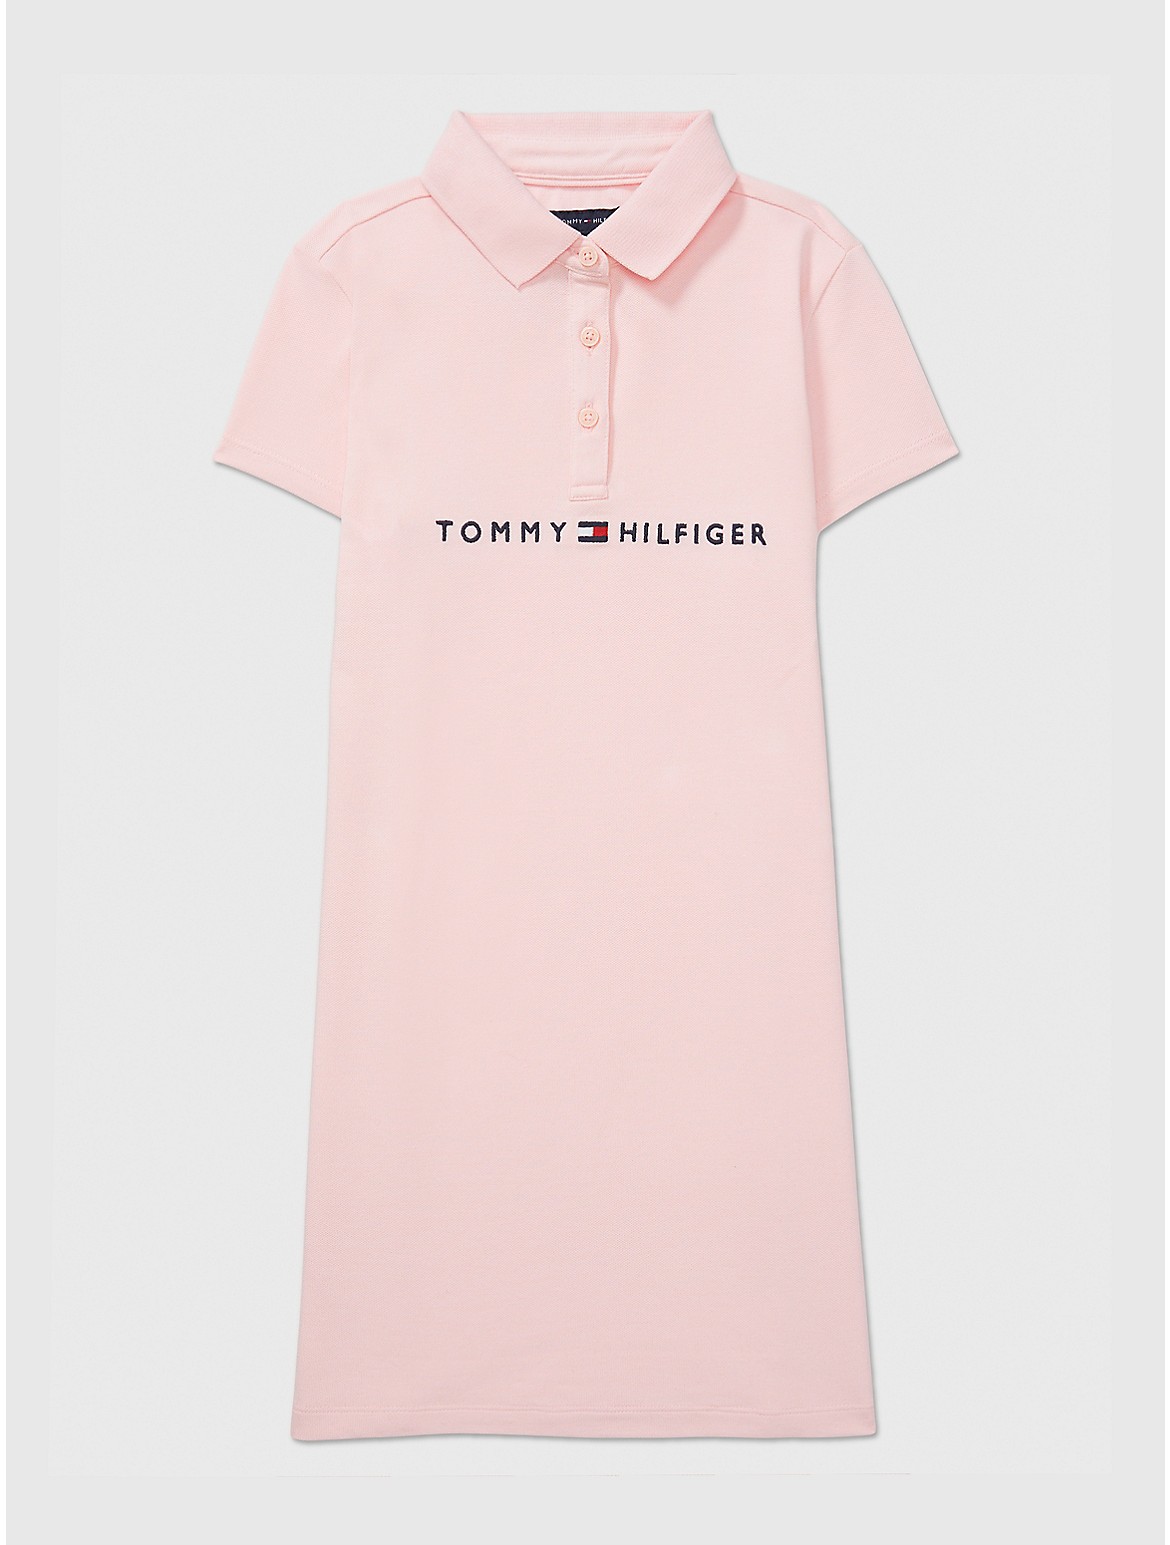 Tommy Hilfiger Girls' Kids' Embroidered Tommy Logo Dress - Pink - L